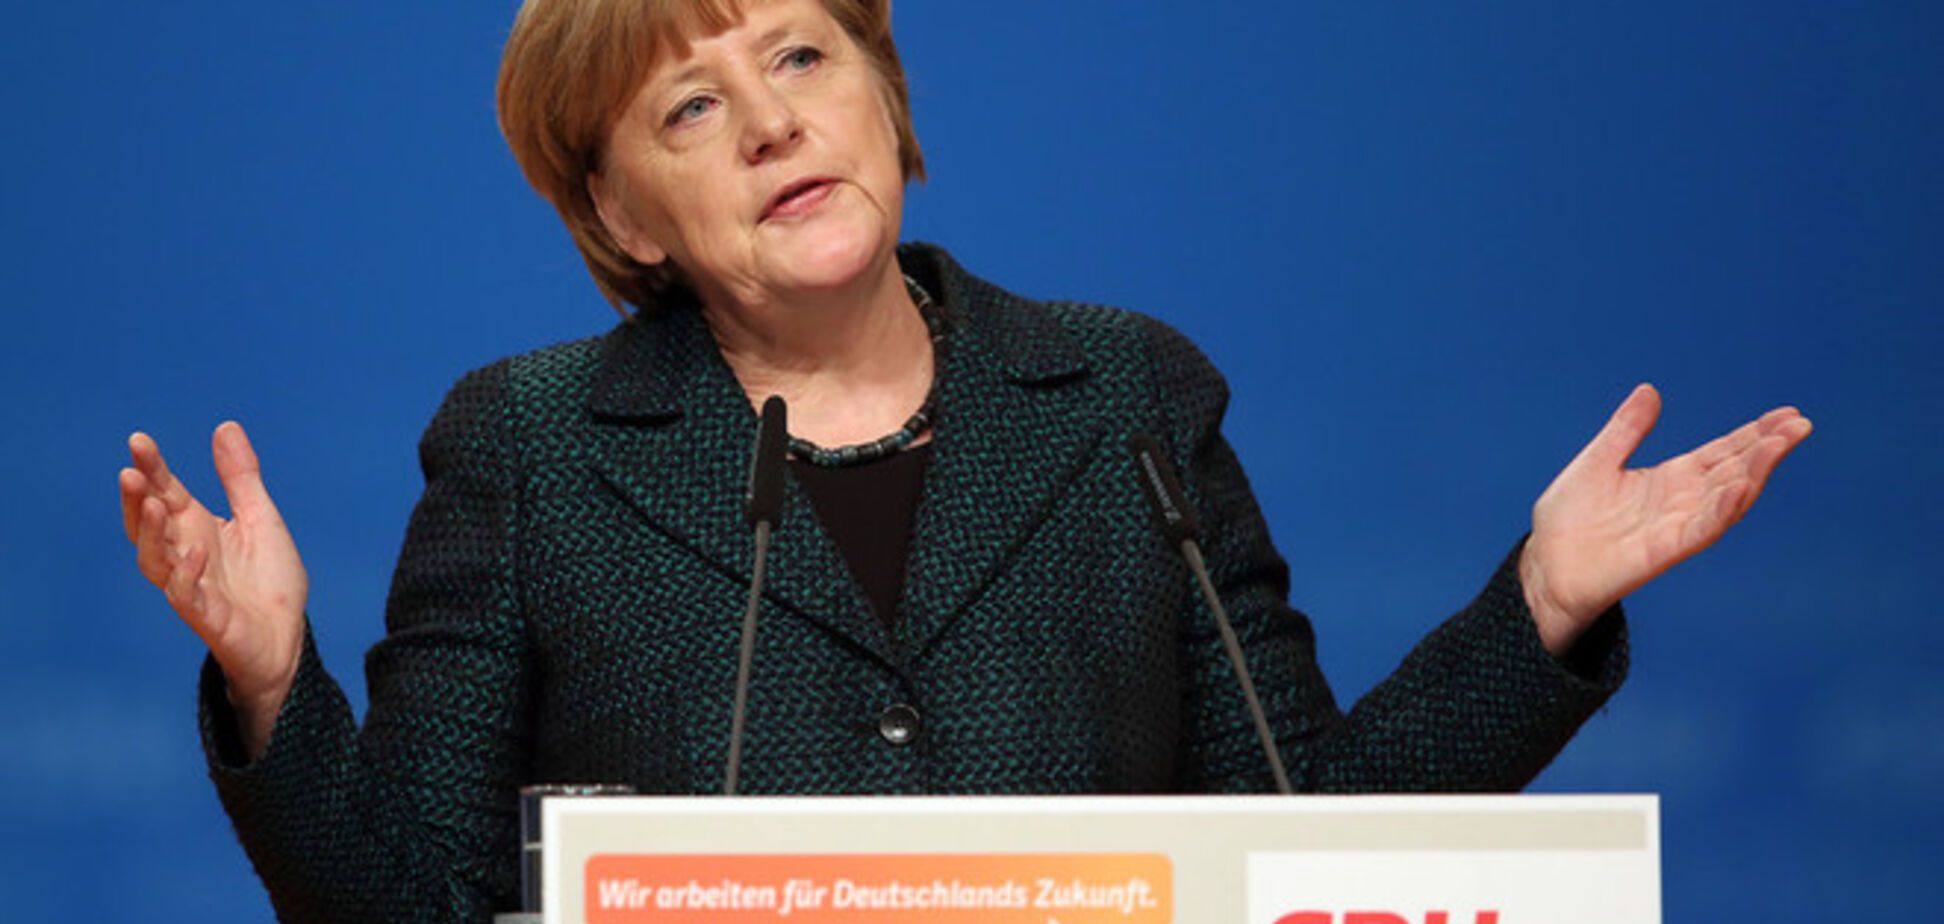 Меркель пока не ждет новых санкций против России - Bloomberg